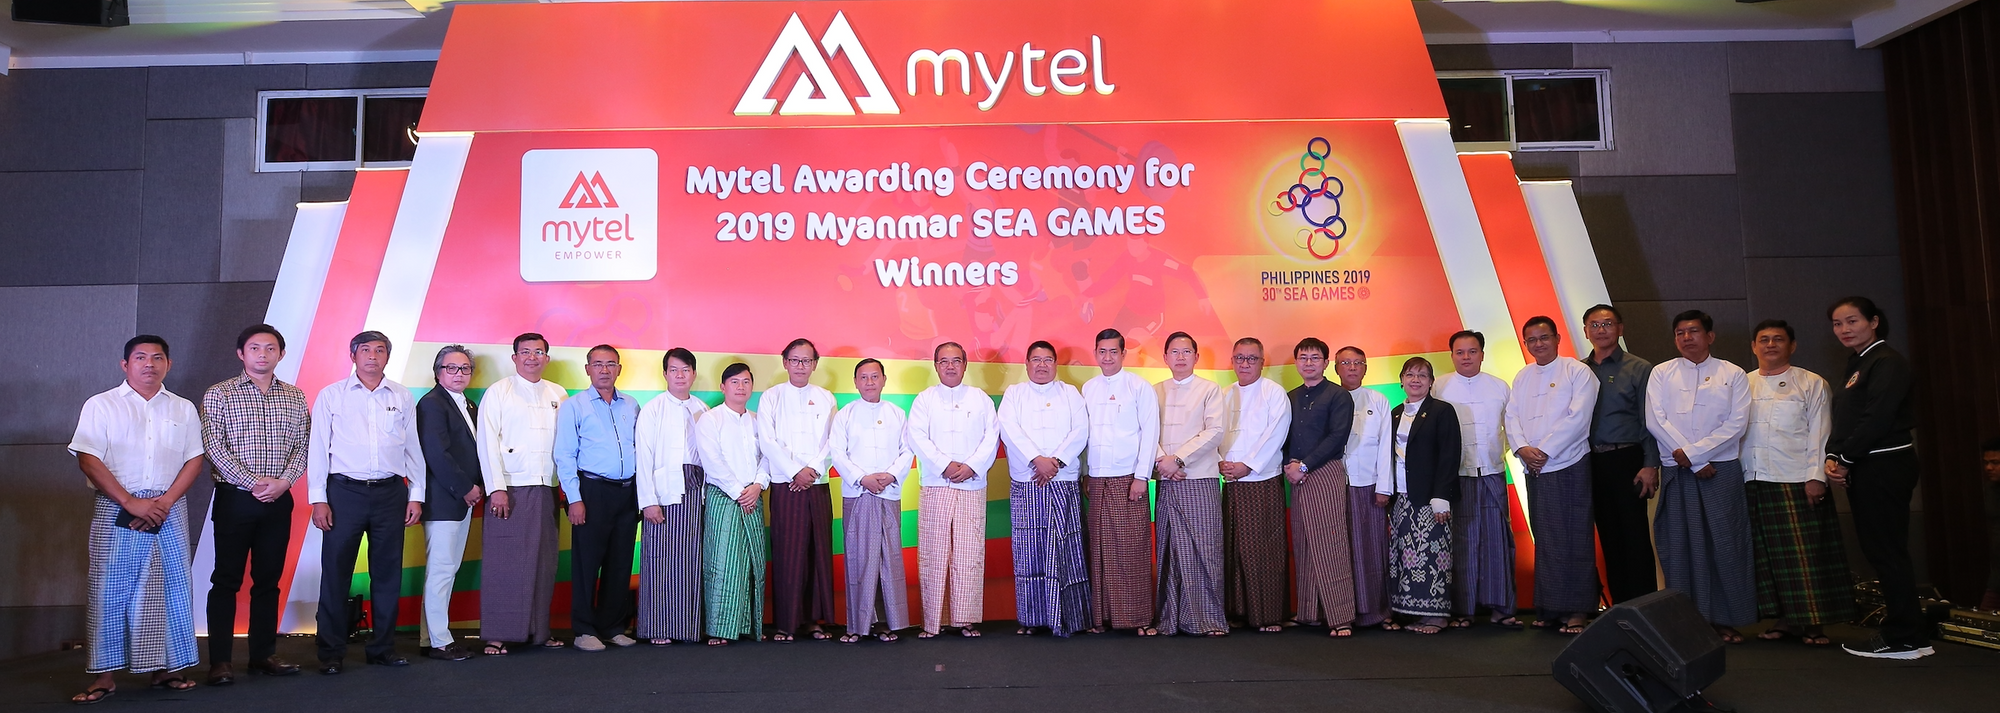 Mytel မှ ၂၀၁၉ ခုနှစ် ဆီးဂိမ်းပြိုင်ပွဲတွင် ဆုရရှိသူ မြန်မာ့အားကစားသမားများကို ဆုချီးမြင့်ပြီး မြန်မာ့အားကစားကဏ္ဍကို ပံ့ပိုးကူညီ